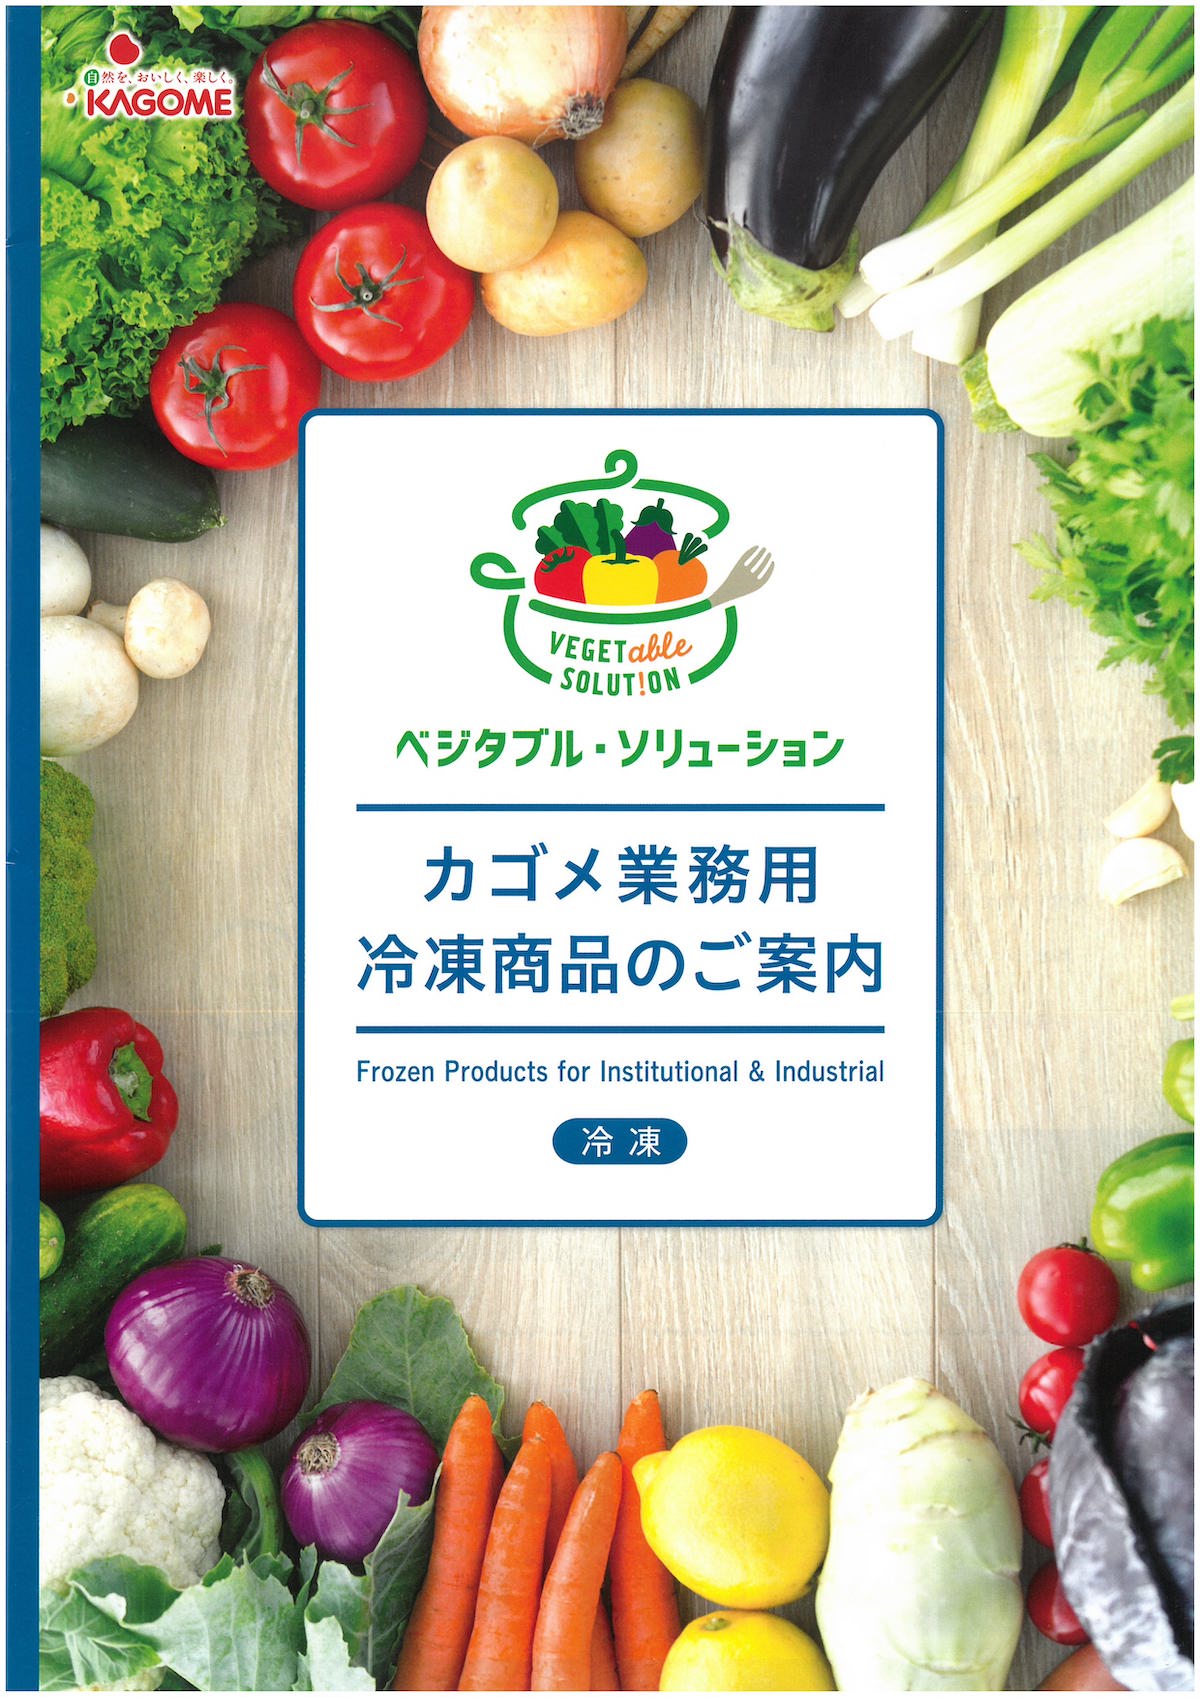 カゴメ業務用冷凍商品 2017 | 冷凍食品カタログ.com